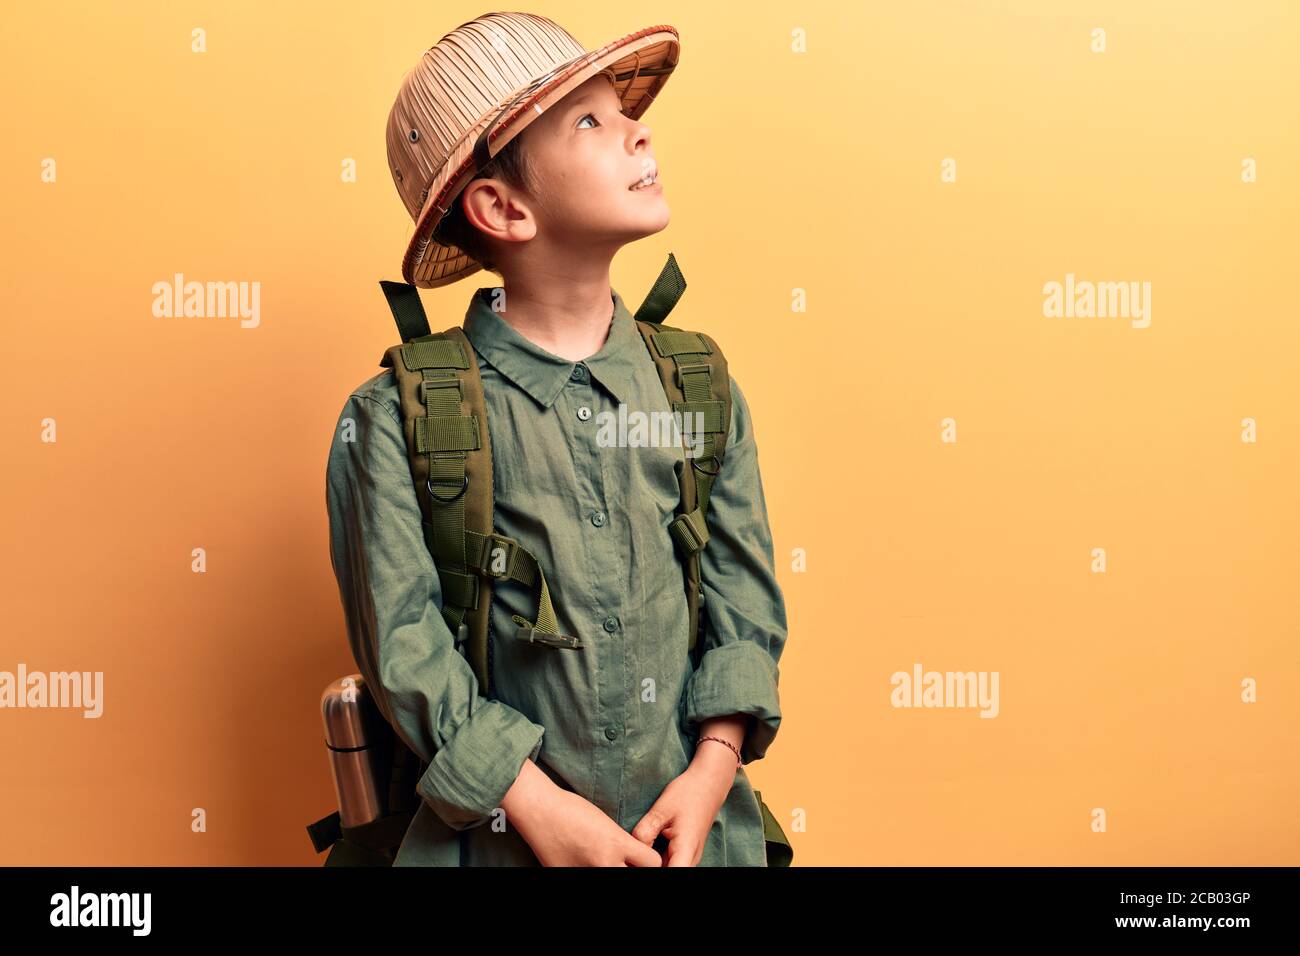 Lindo niño rubio con sombrero explorador y mochila mirando al lado